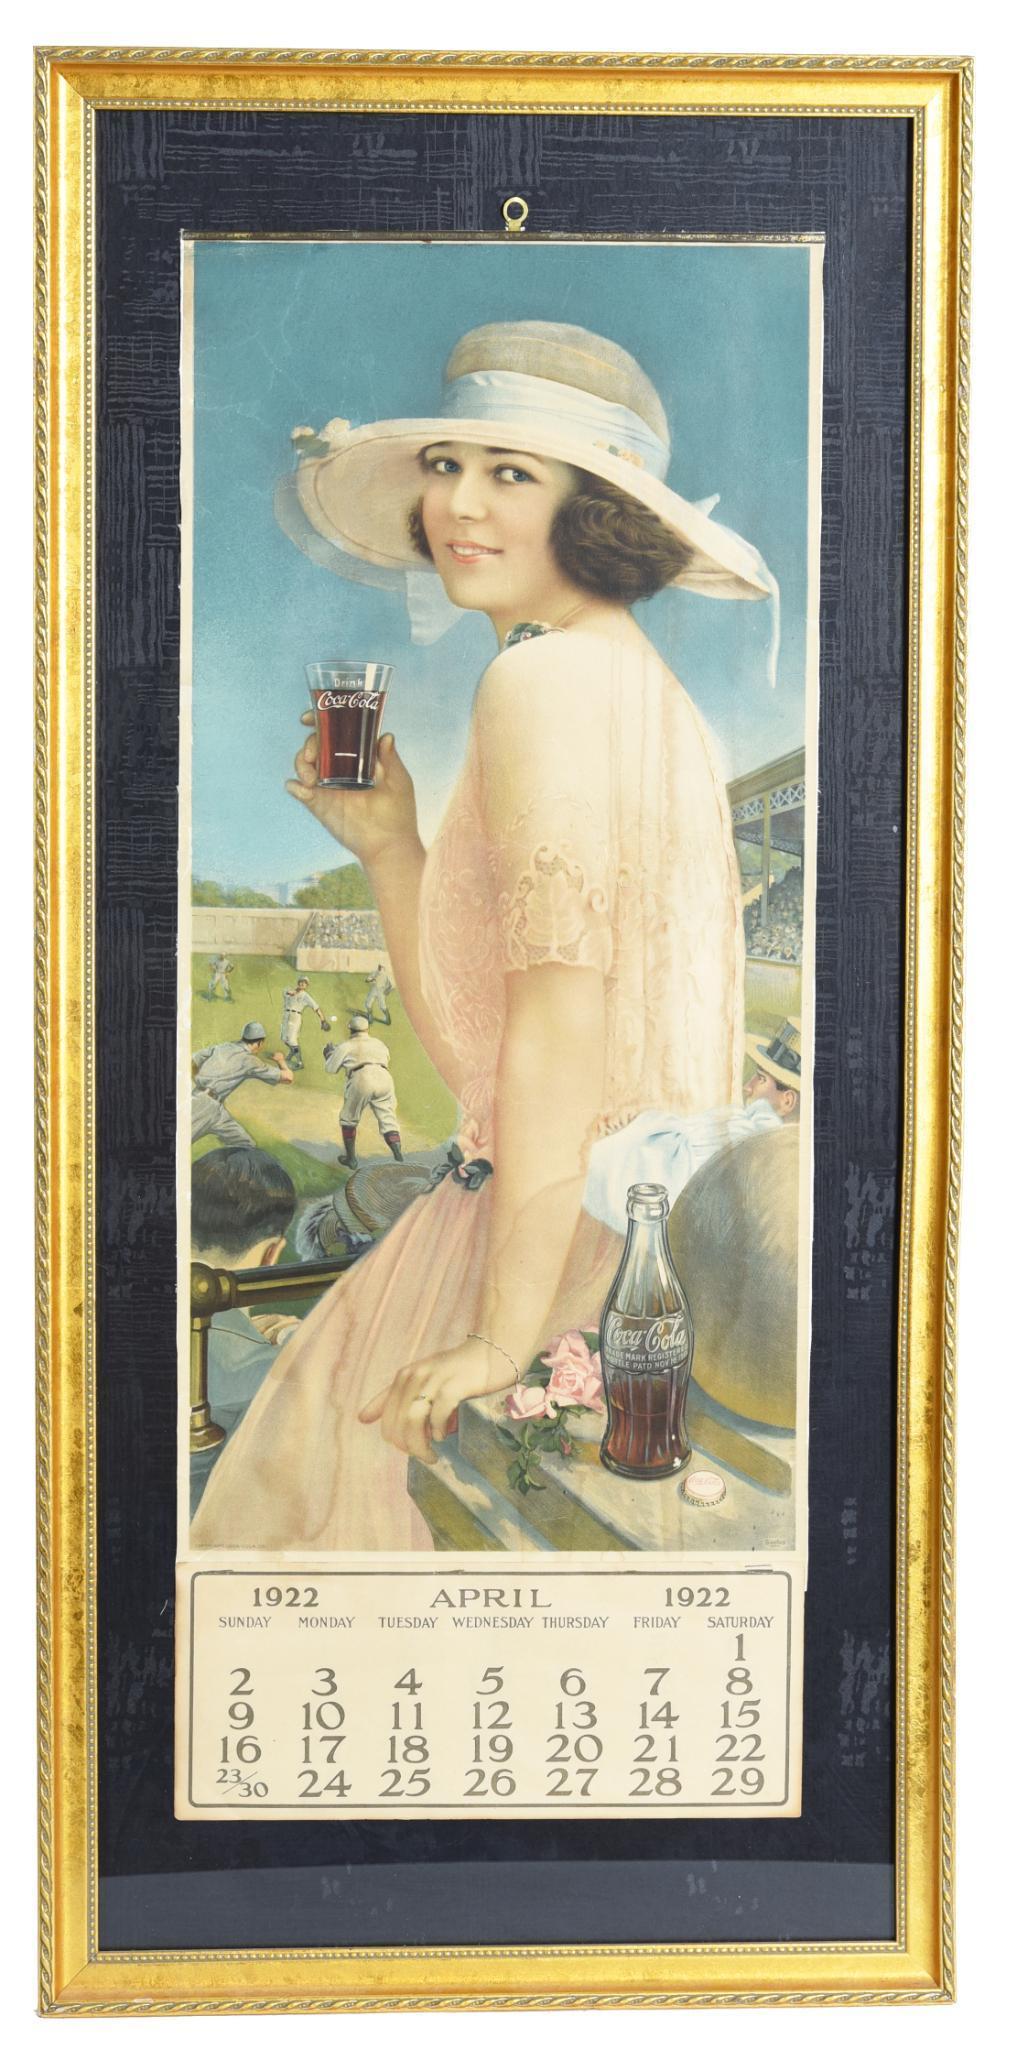 1922 Coca-Cola Baseball Girl Calendar